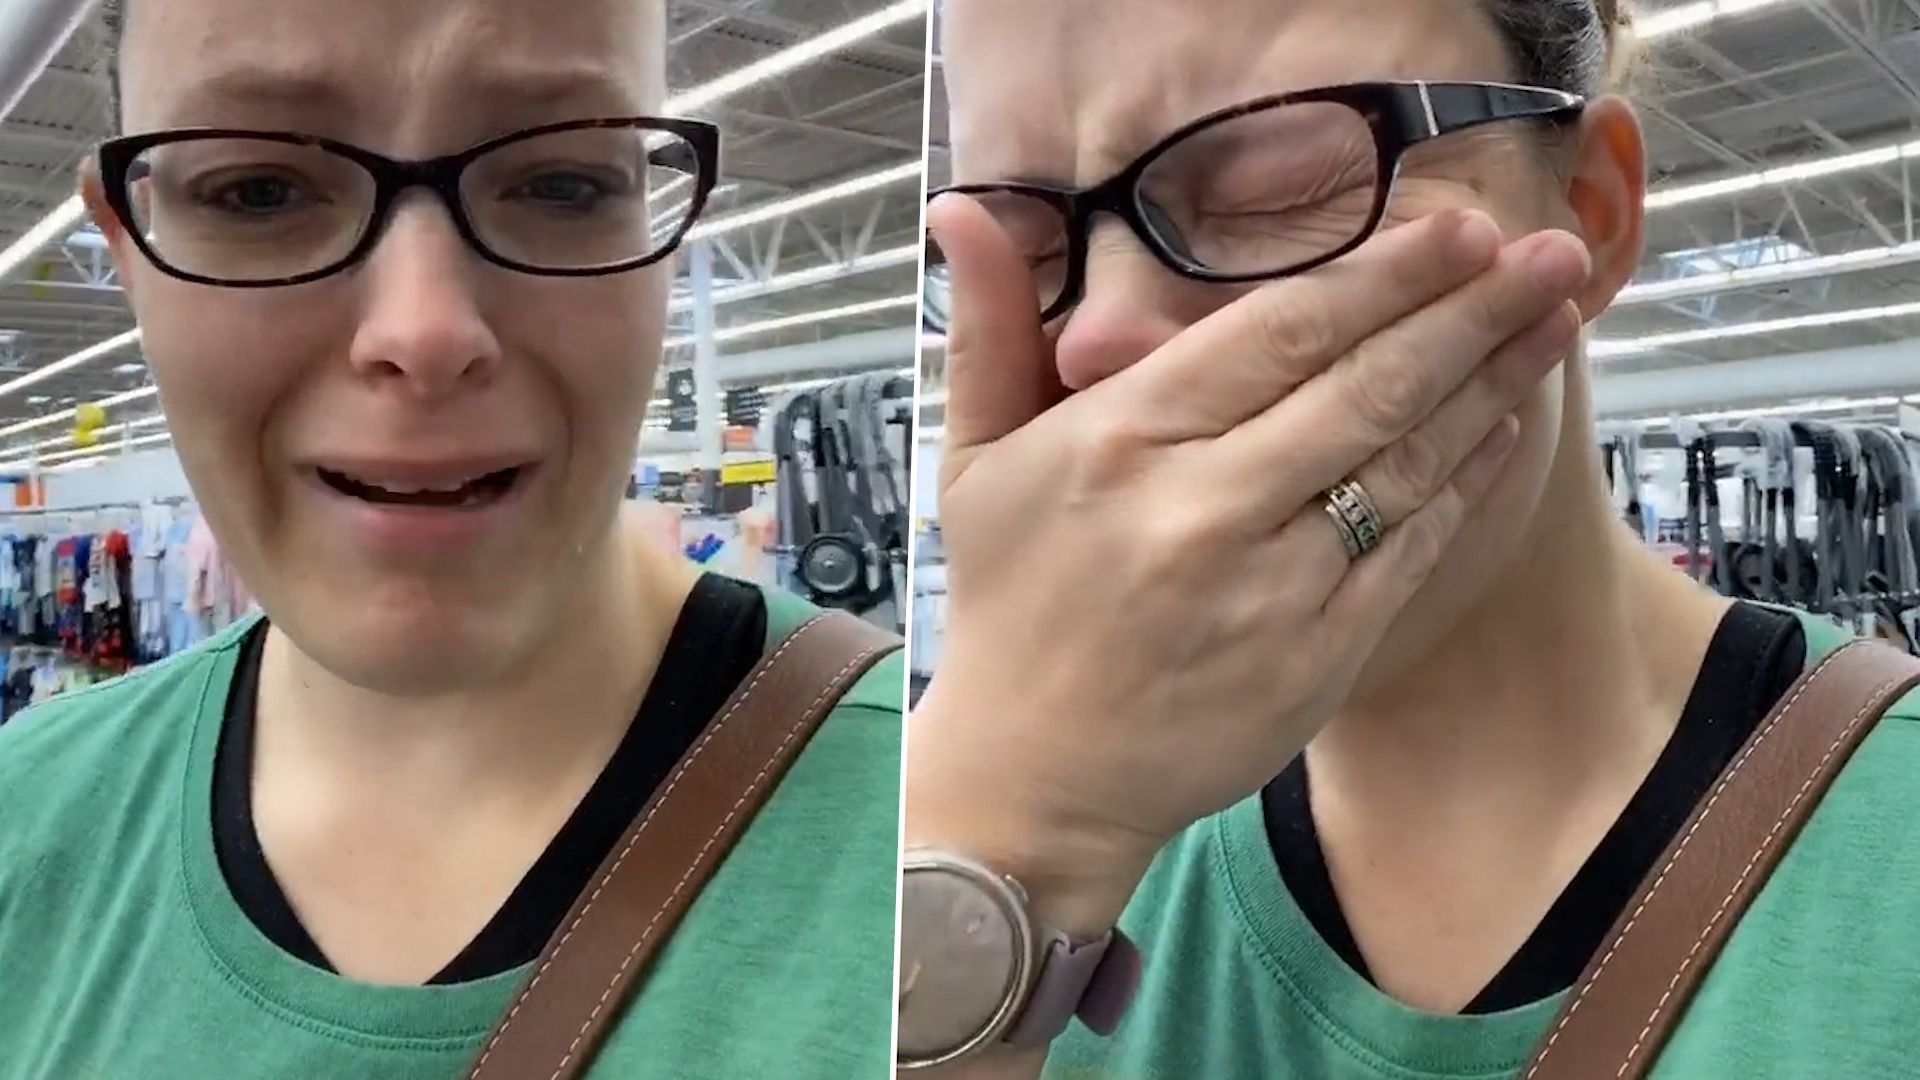 Mutter in Tränen wegen Hamsterkäufen: Mutter von vier Kindern bekommt keine Windeln mehr